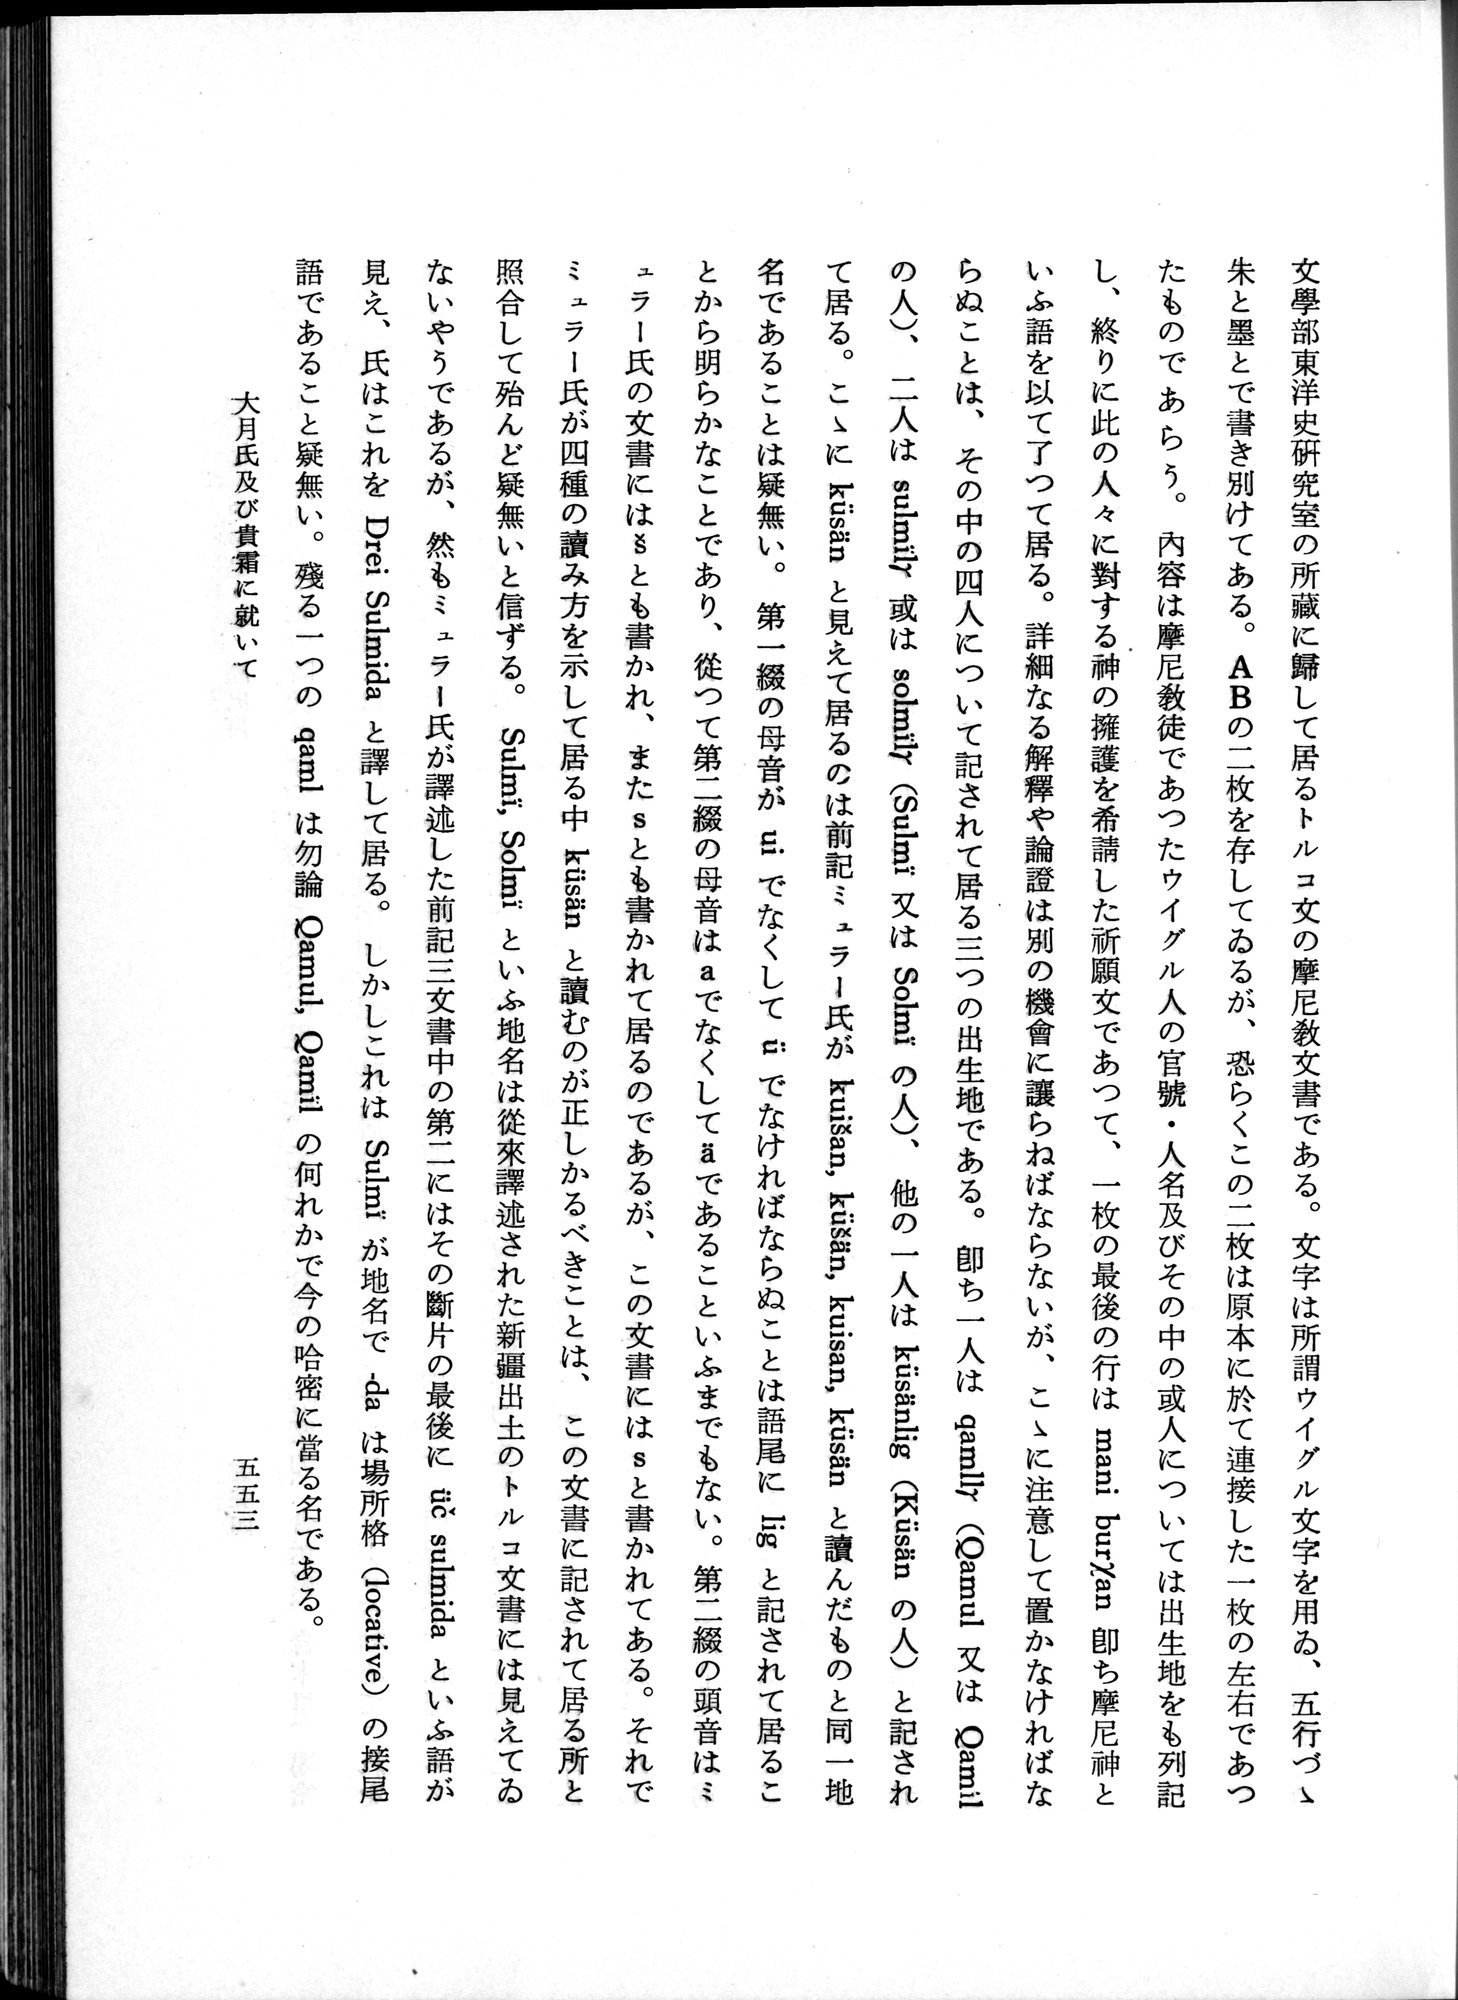 羽田博士史学論文集 : vol.1 / Page 591 (Grayscale High Resolution Image)